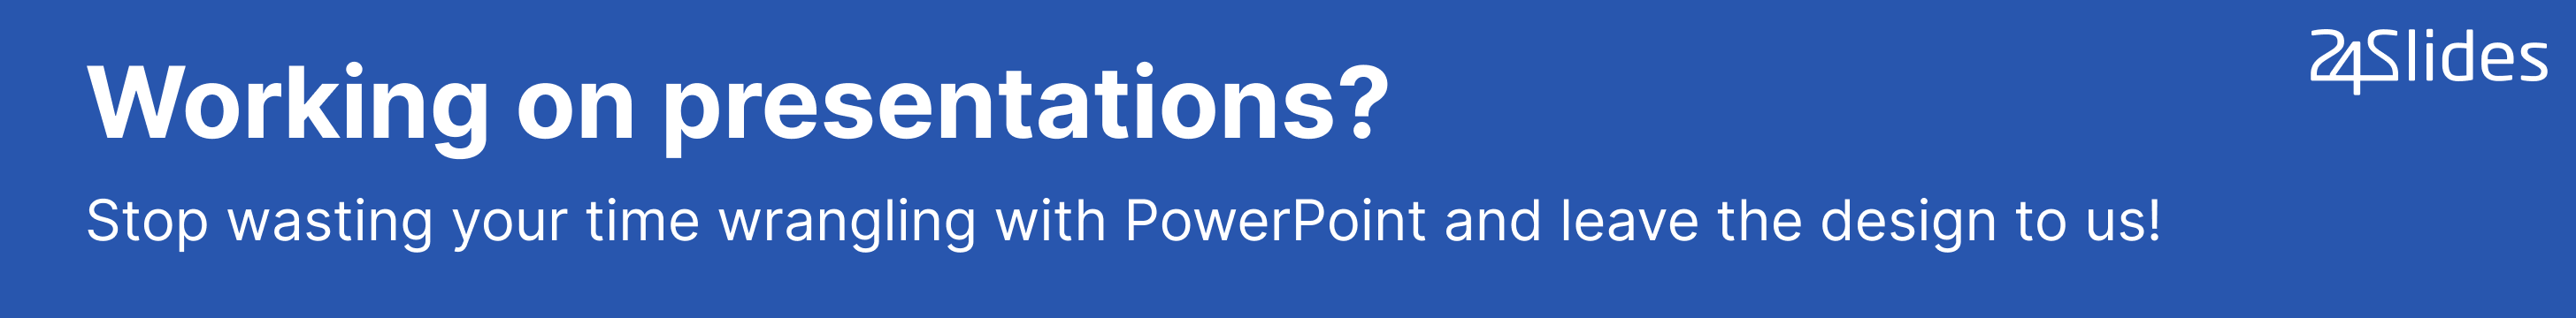 powerpoint presentation background design hd